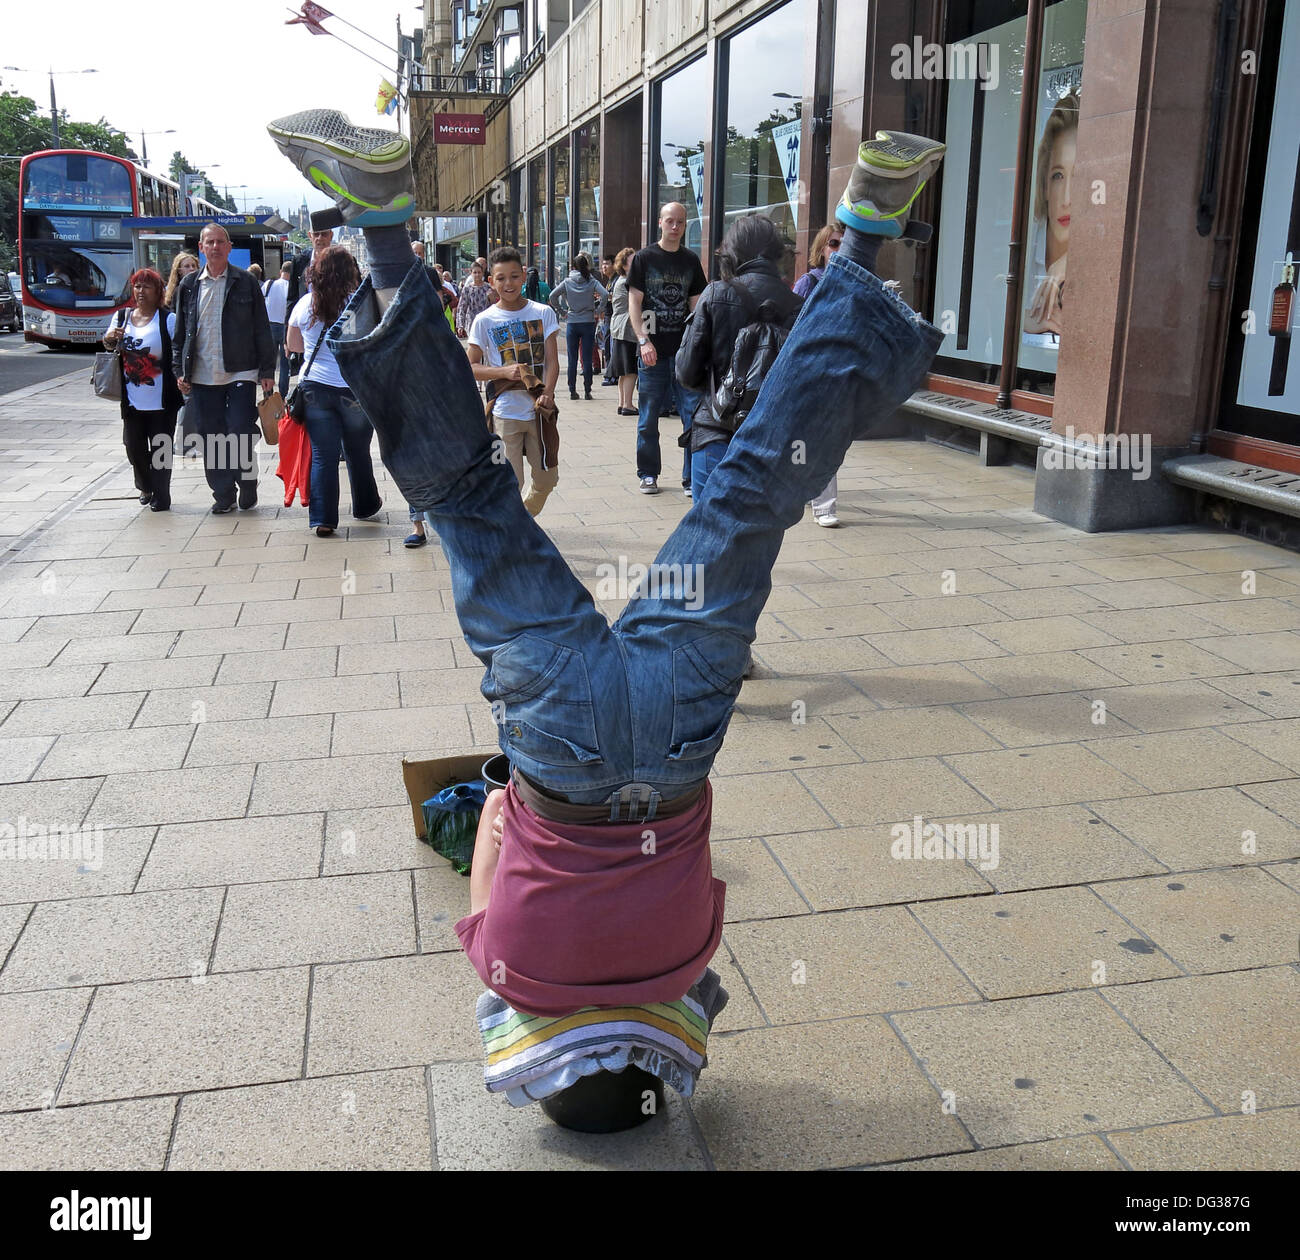 Fringe Busker in Princes St, settimana del Festival di Edimburgo - a testa in giù in un secchio, Scozia, Regno Unito, EH2 2AN Foto Stock